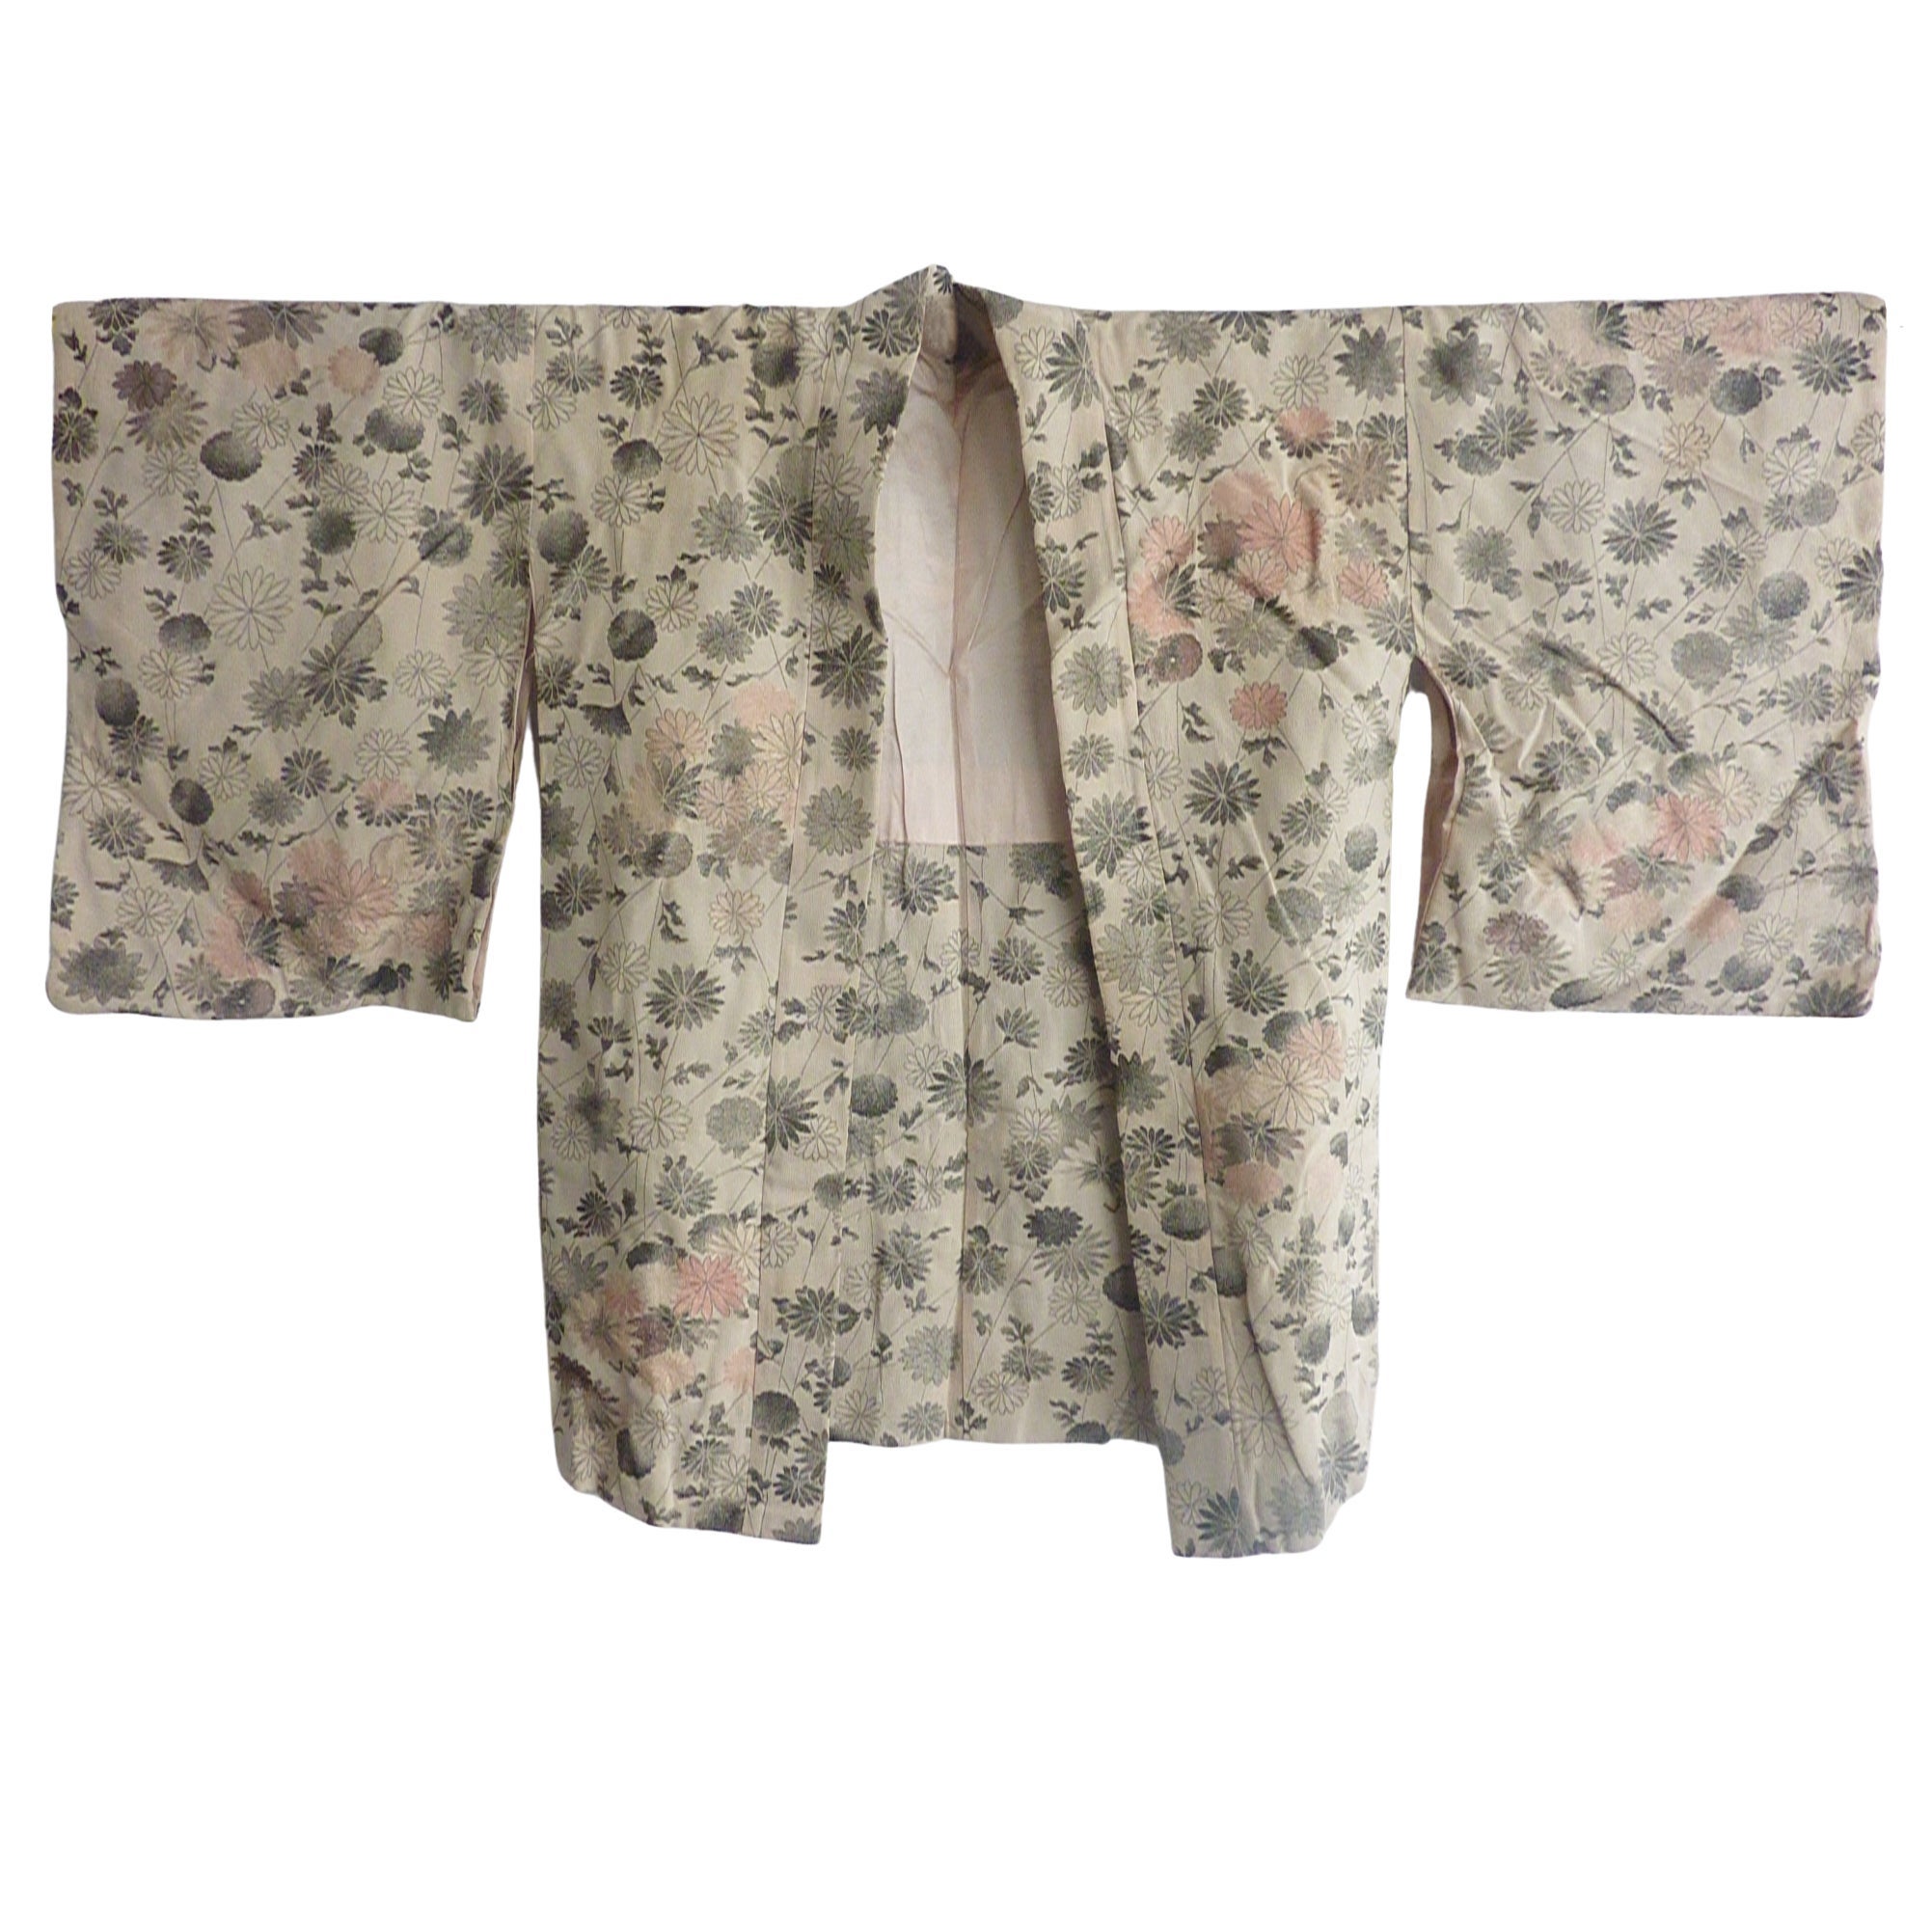 Antique Japanese Rare silver thread Silk Brocade Haori Kimono Jacket 